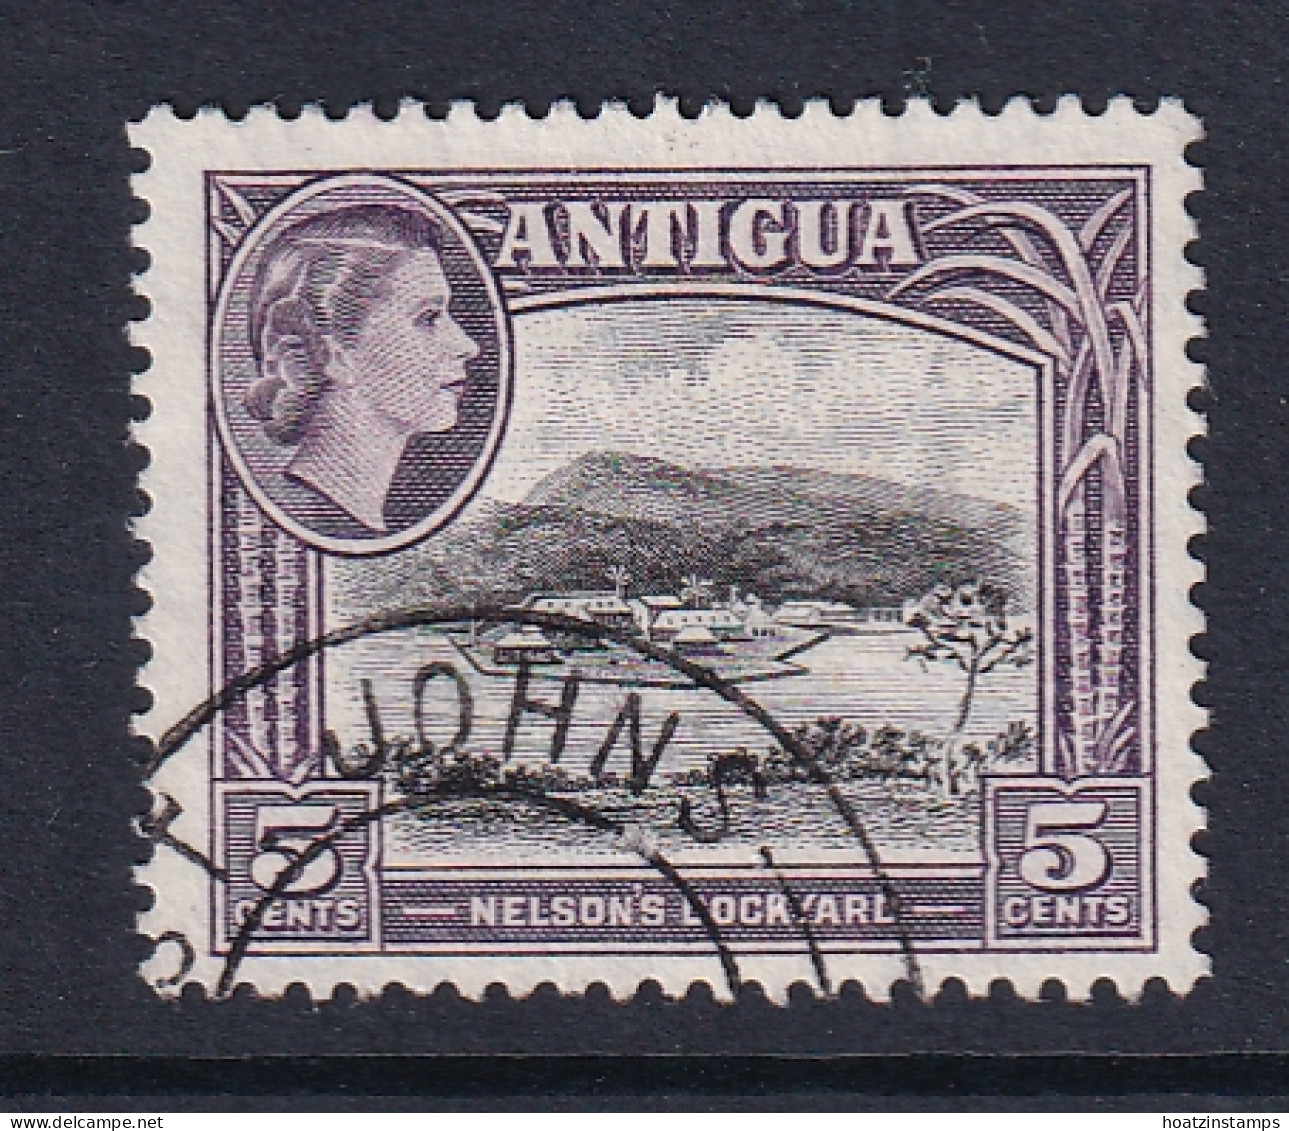 Antigua: 1953/62   QE II - Pictorial     SG125    5c       Used - 1858-1960 Colonie Britannique